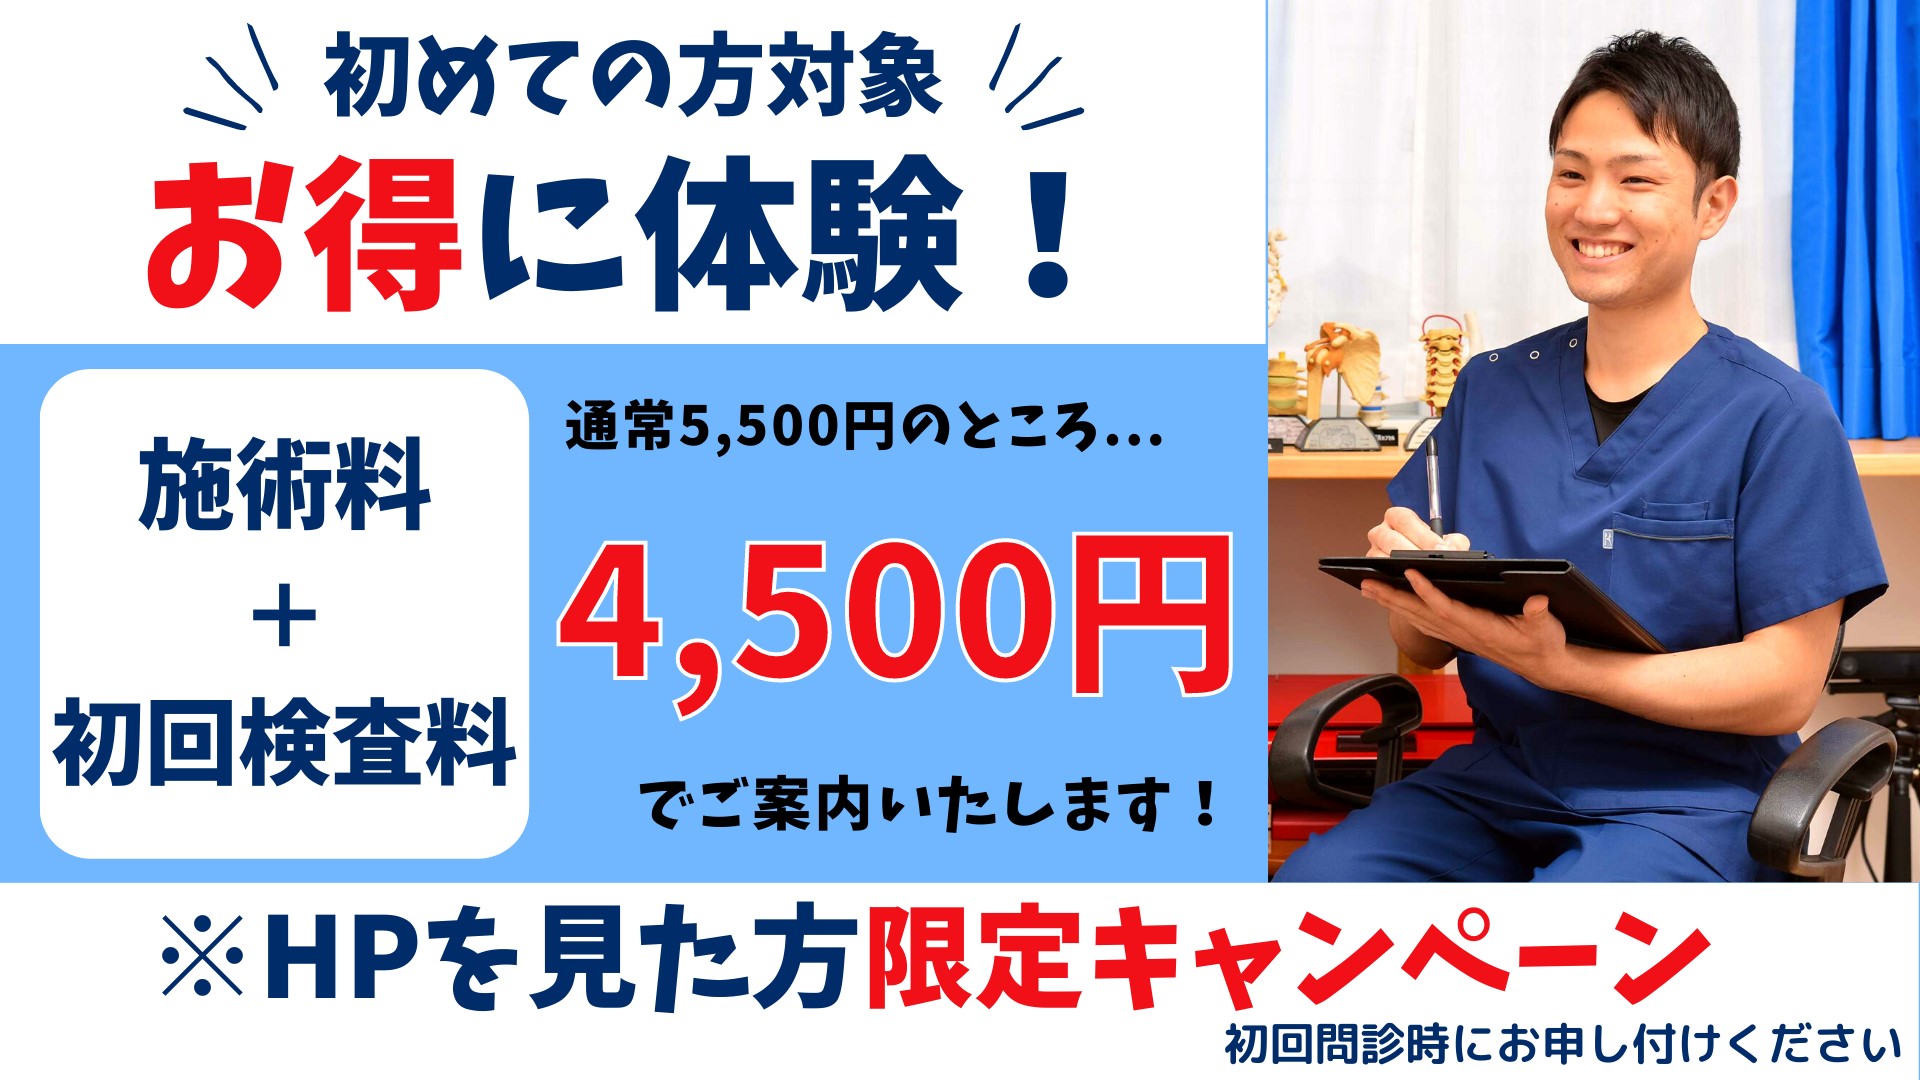 初回限定キャンペーン実施中 5,000円→4,000円